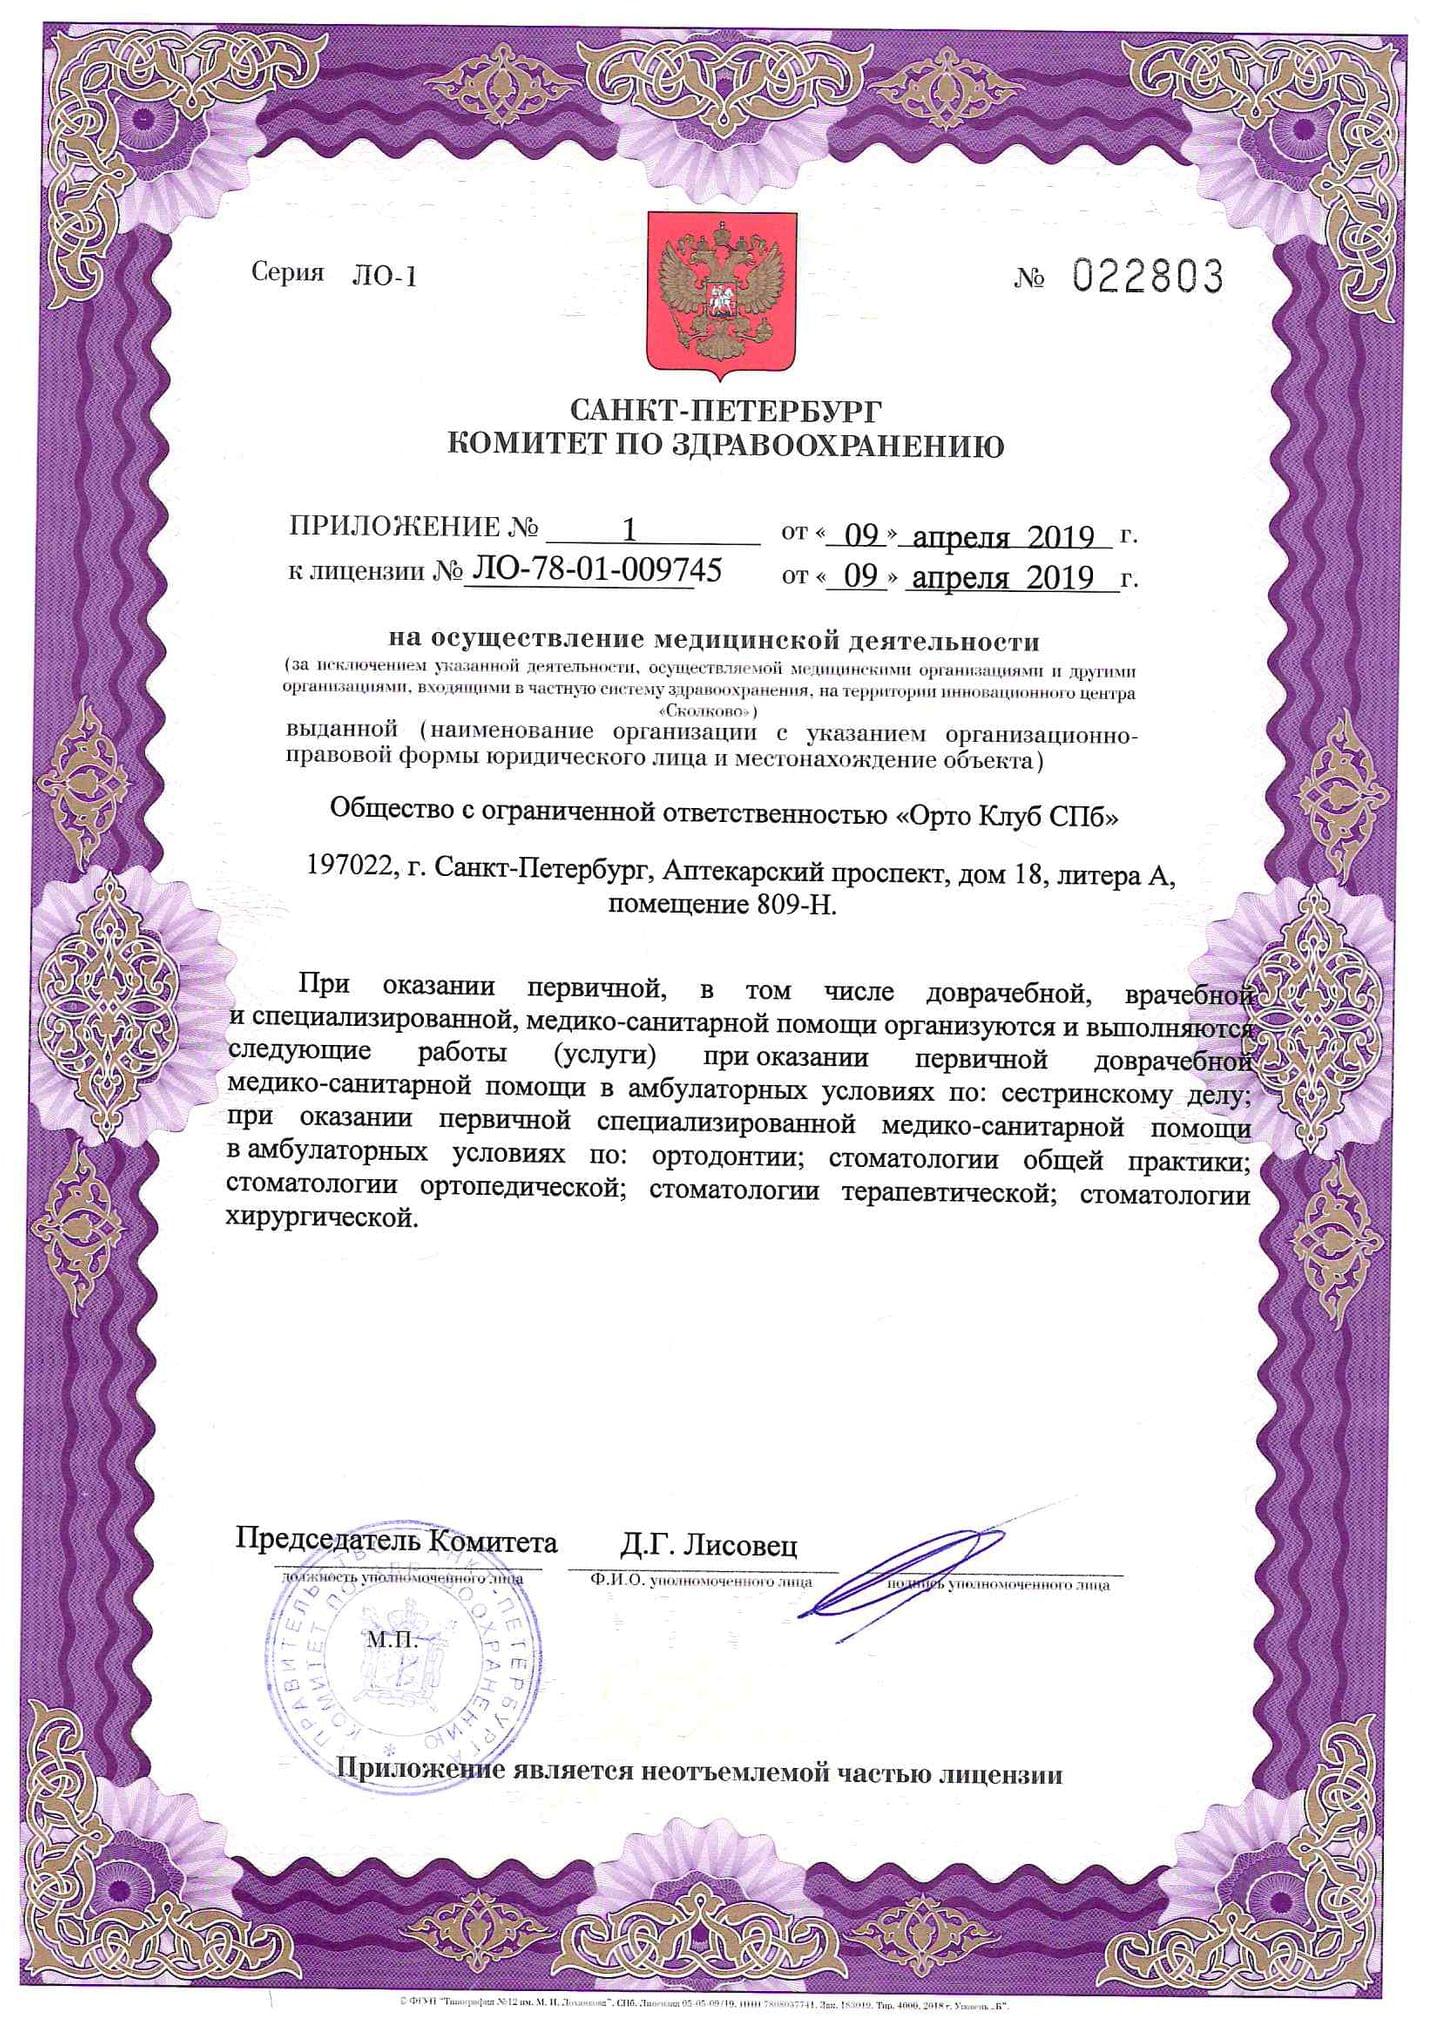 Сертификат Официальная информация Санкт-Петербург, Аптекарский